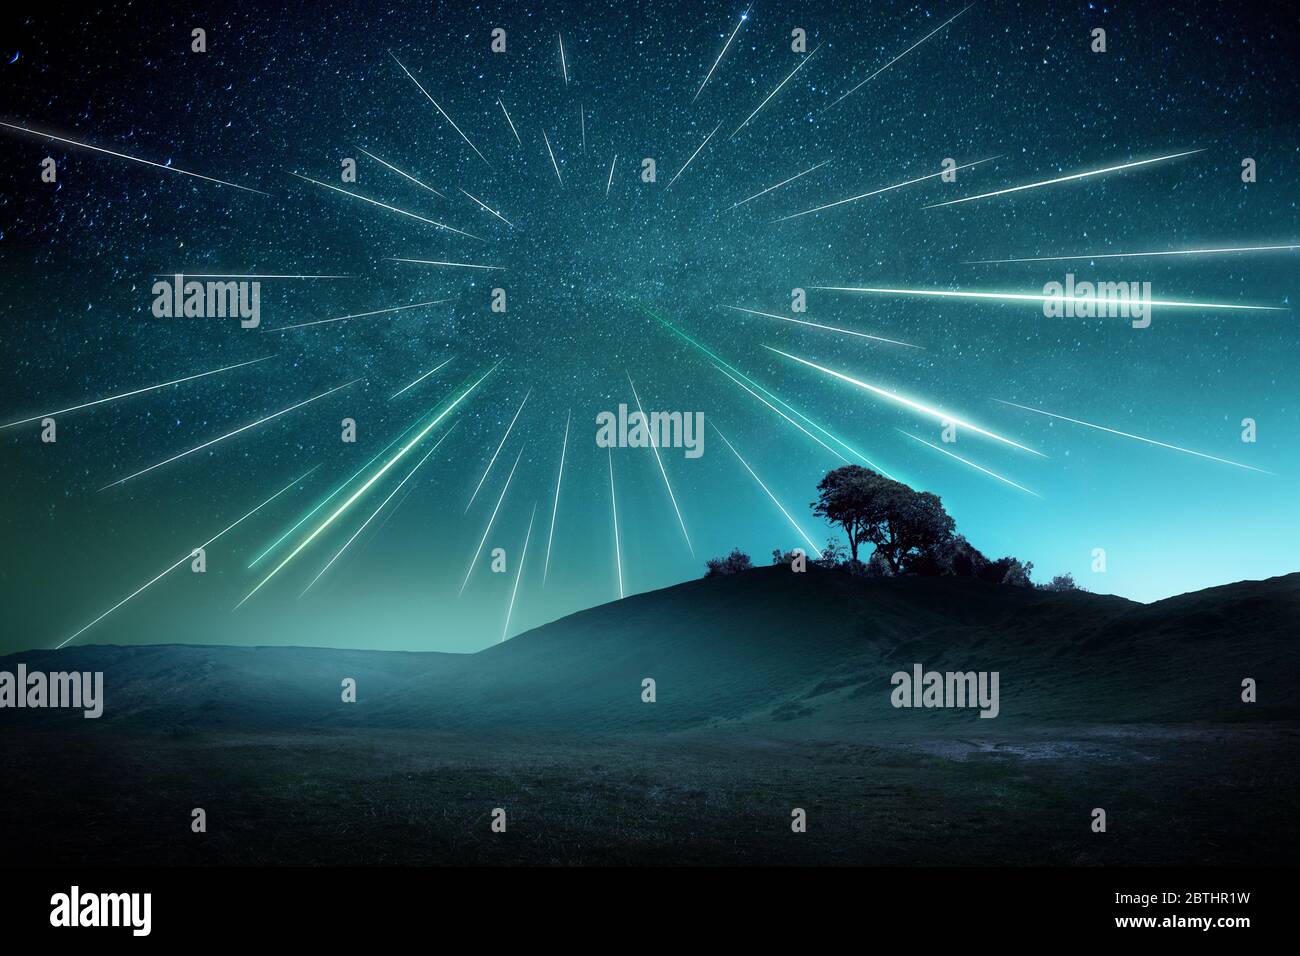 Una grande doccia meteora in una serata nebbiosa con striature attraverso il cielo. Stelle di ripresa paesaggio astrofotografia composito. Foto Stock